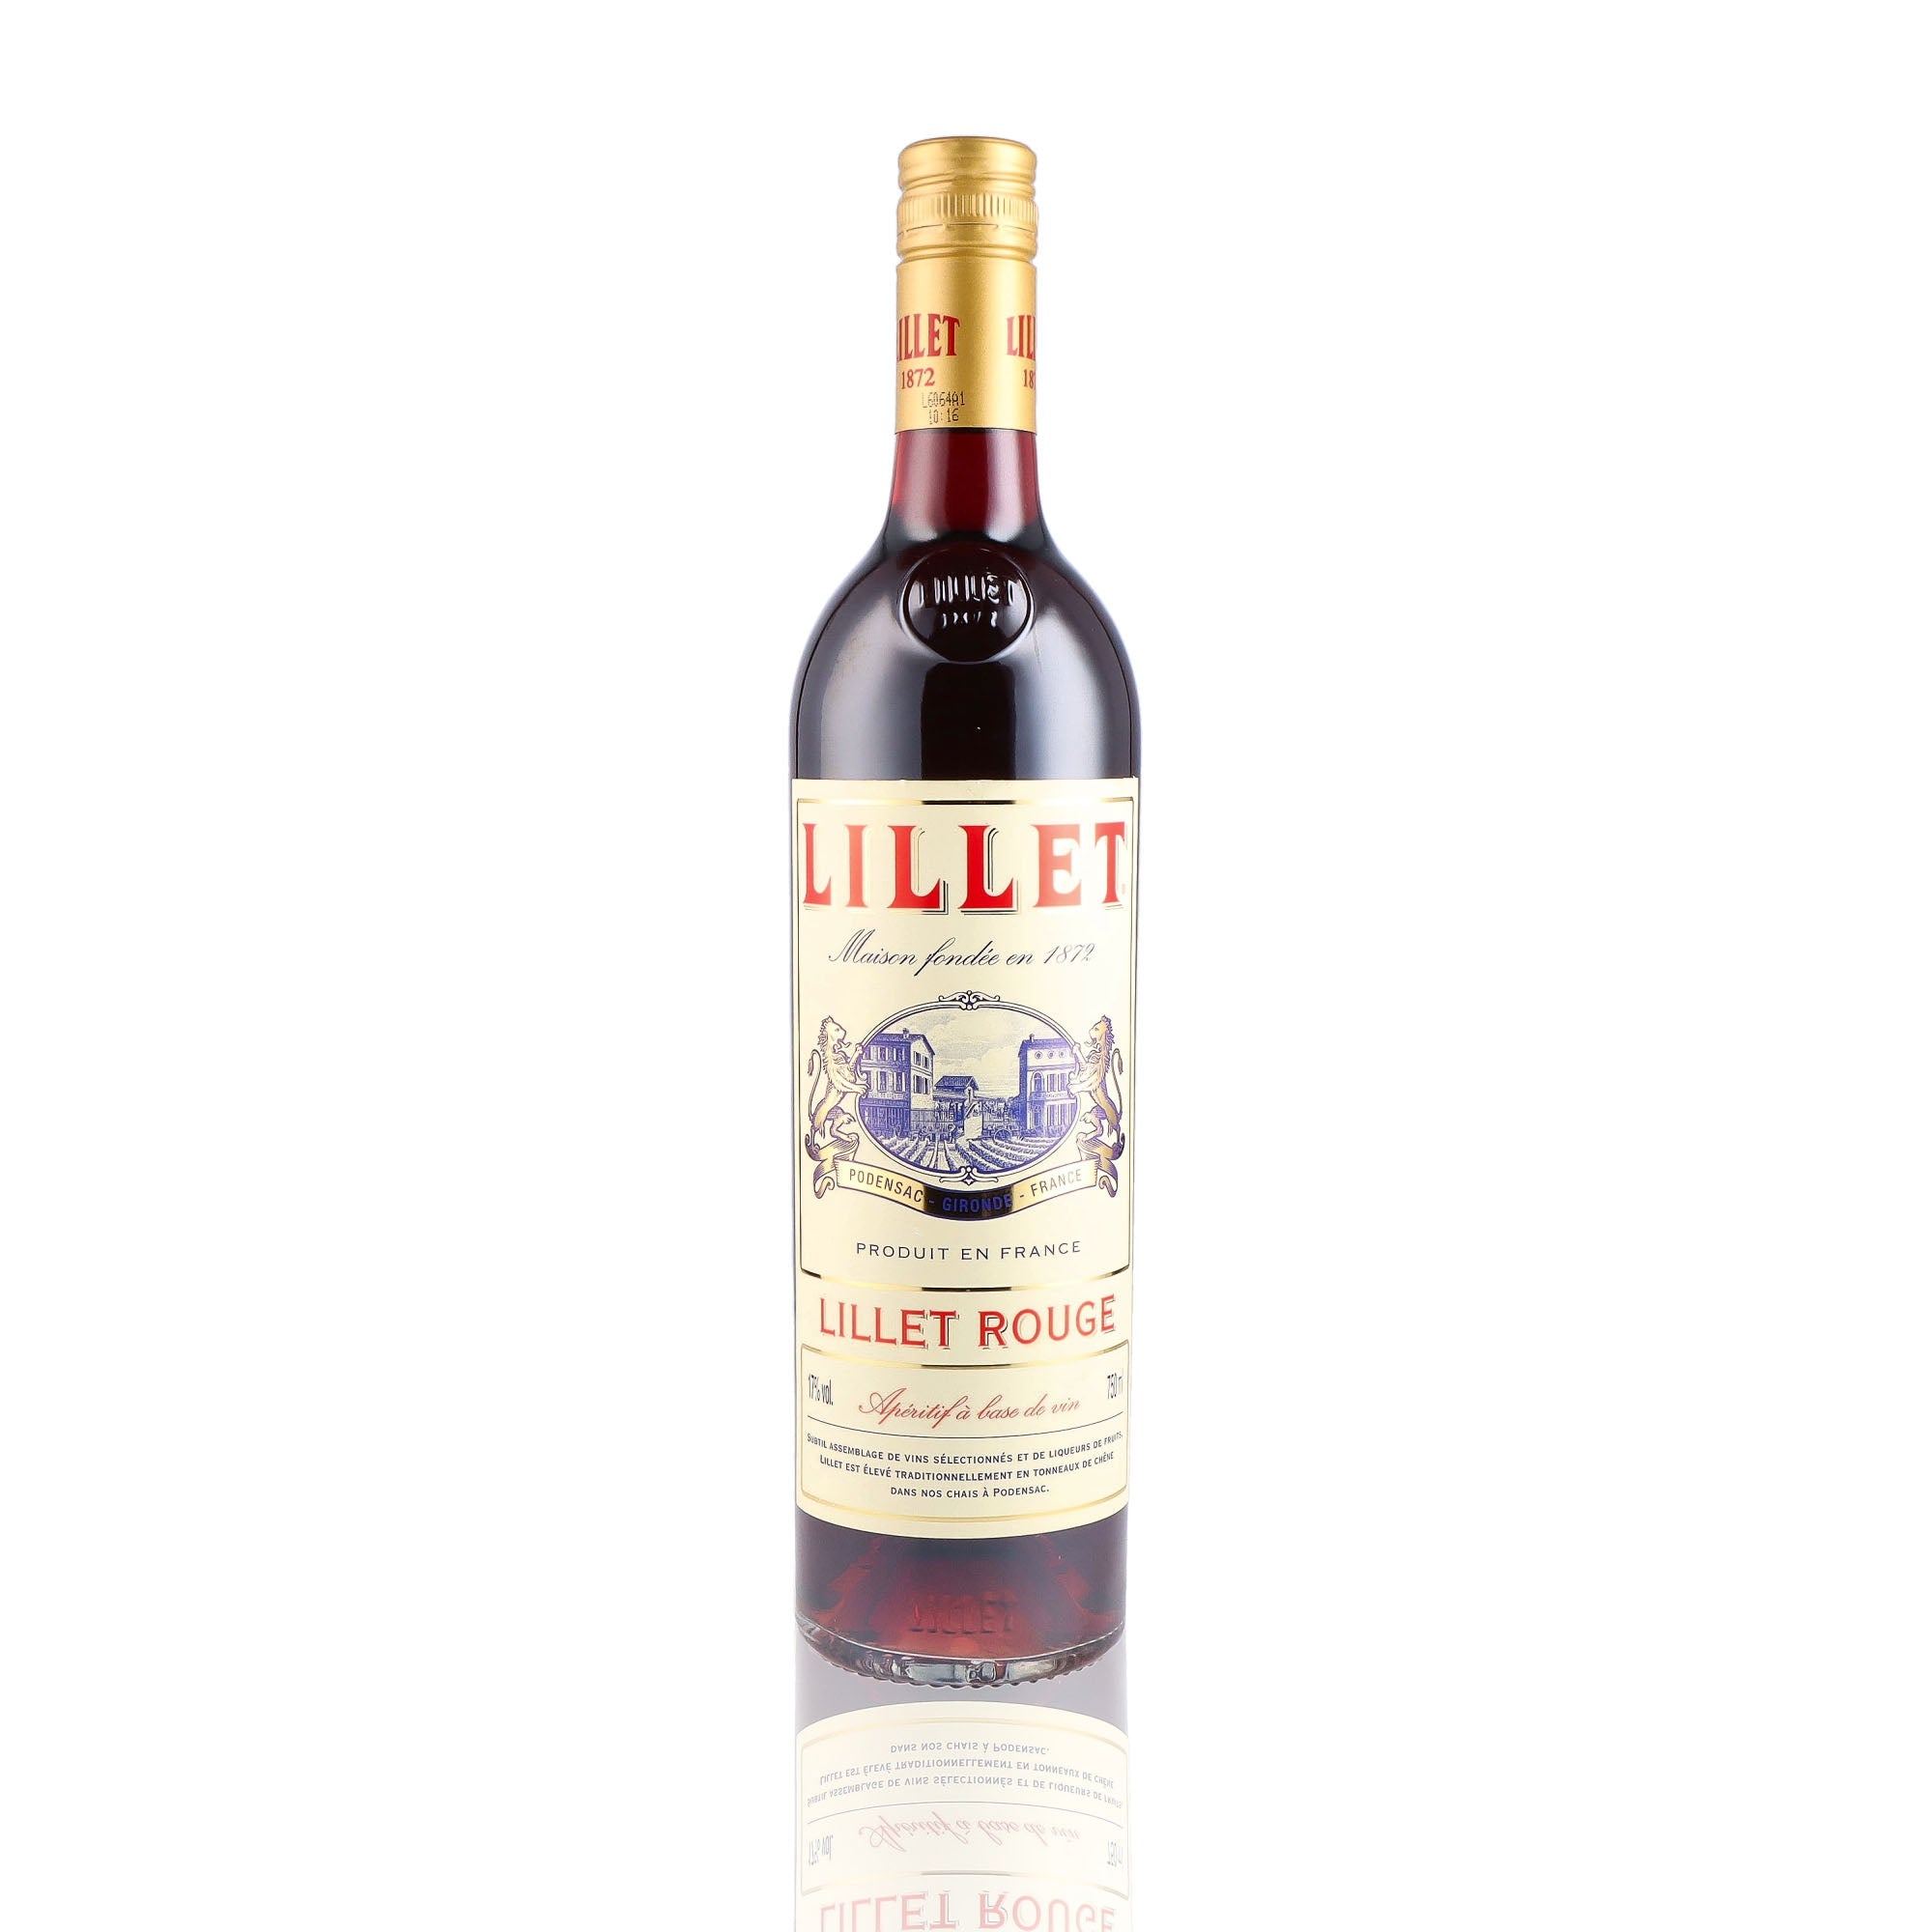 Une bouteille d'Apéritif, de la marque Lillet, nommée Rouge.